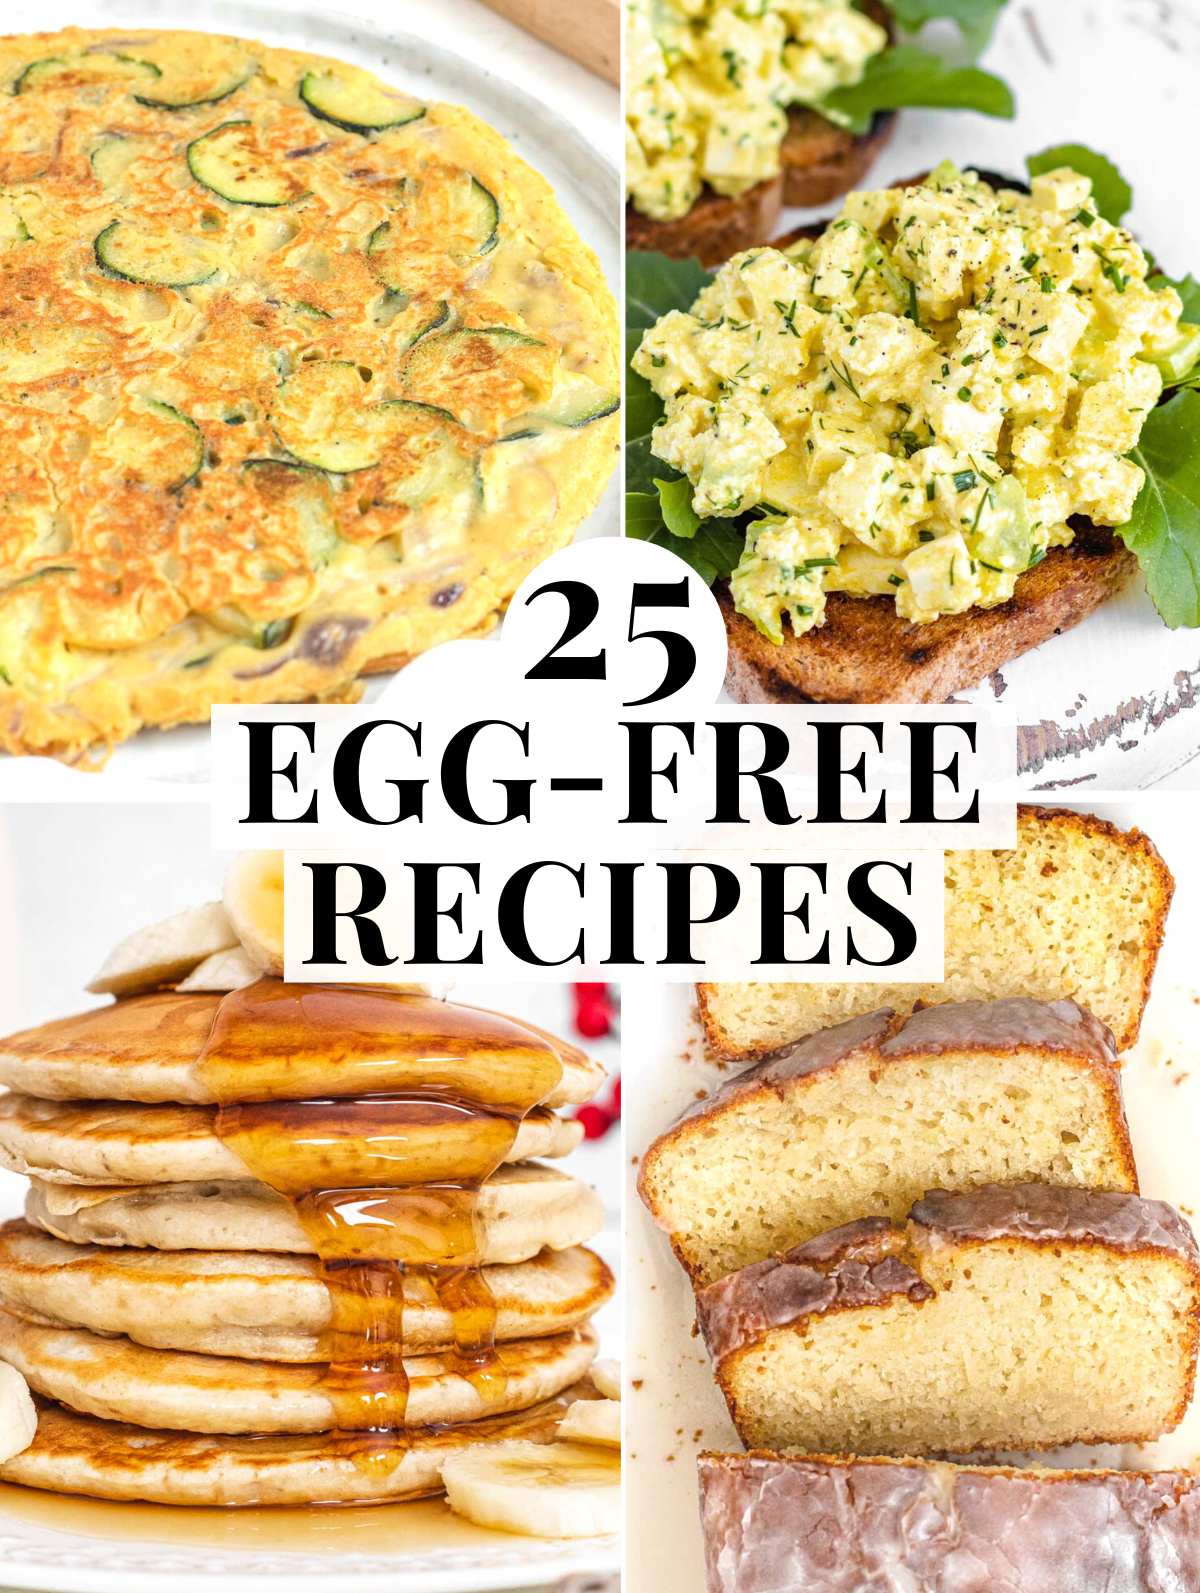 egg-free recipes